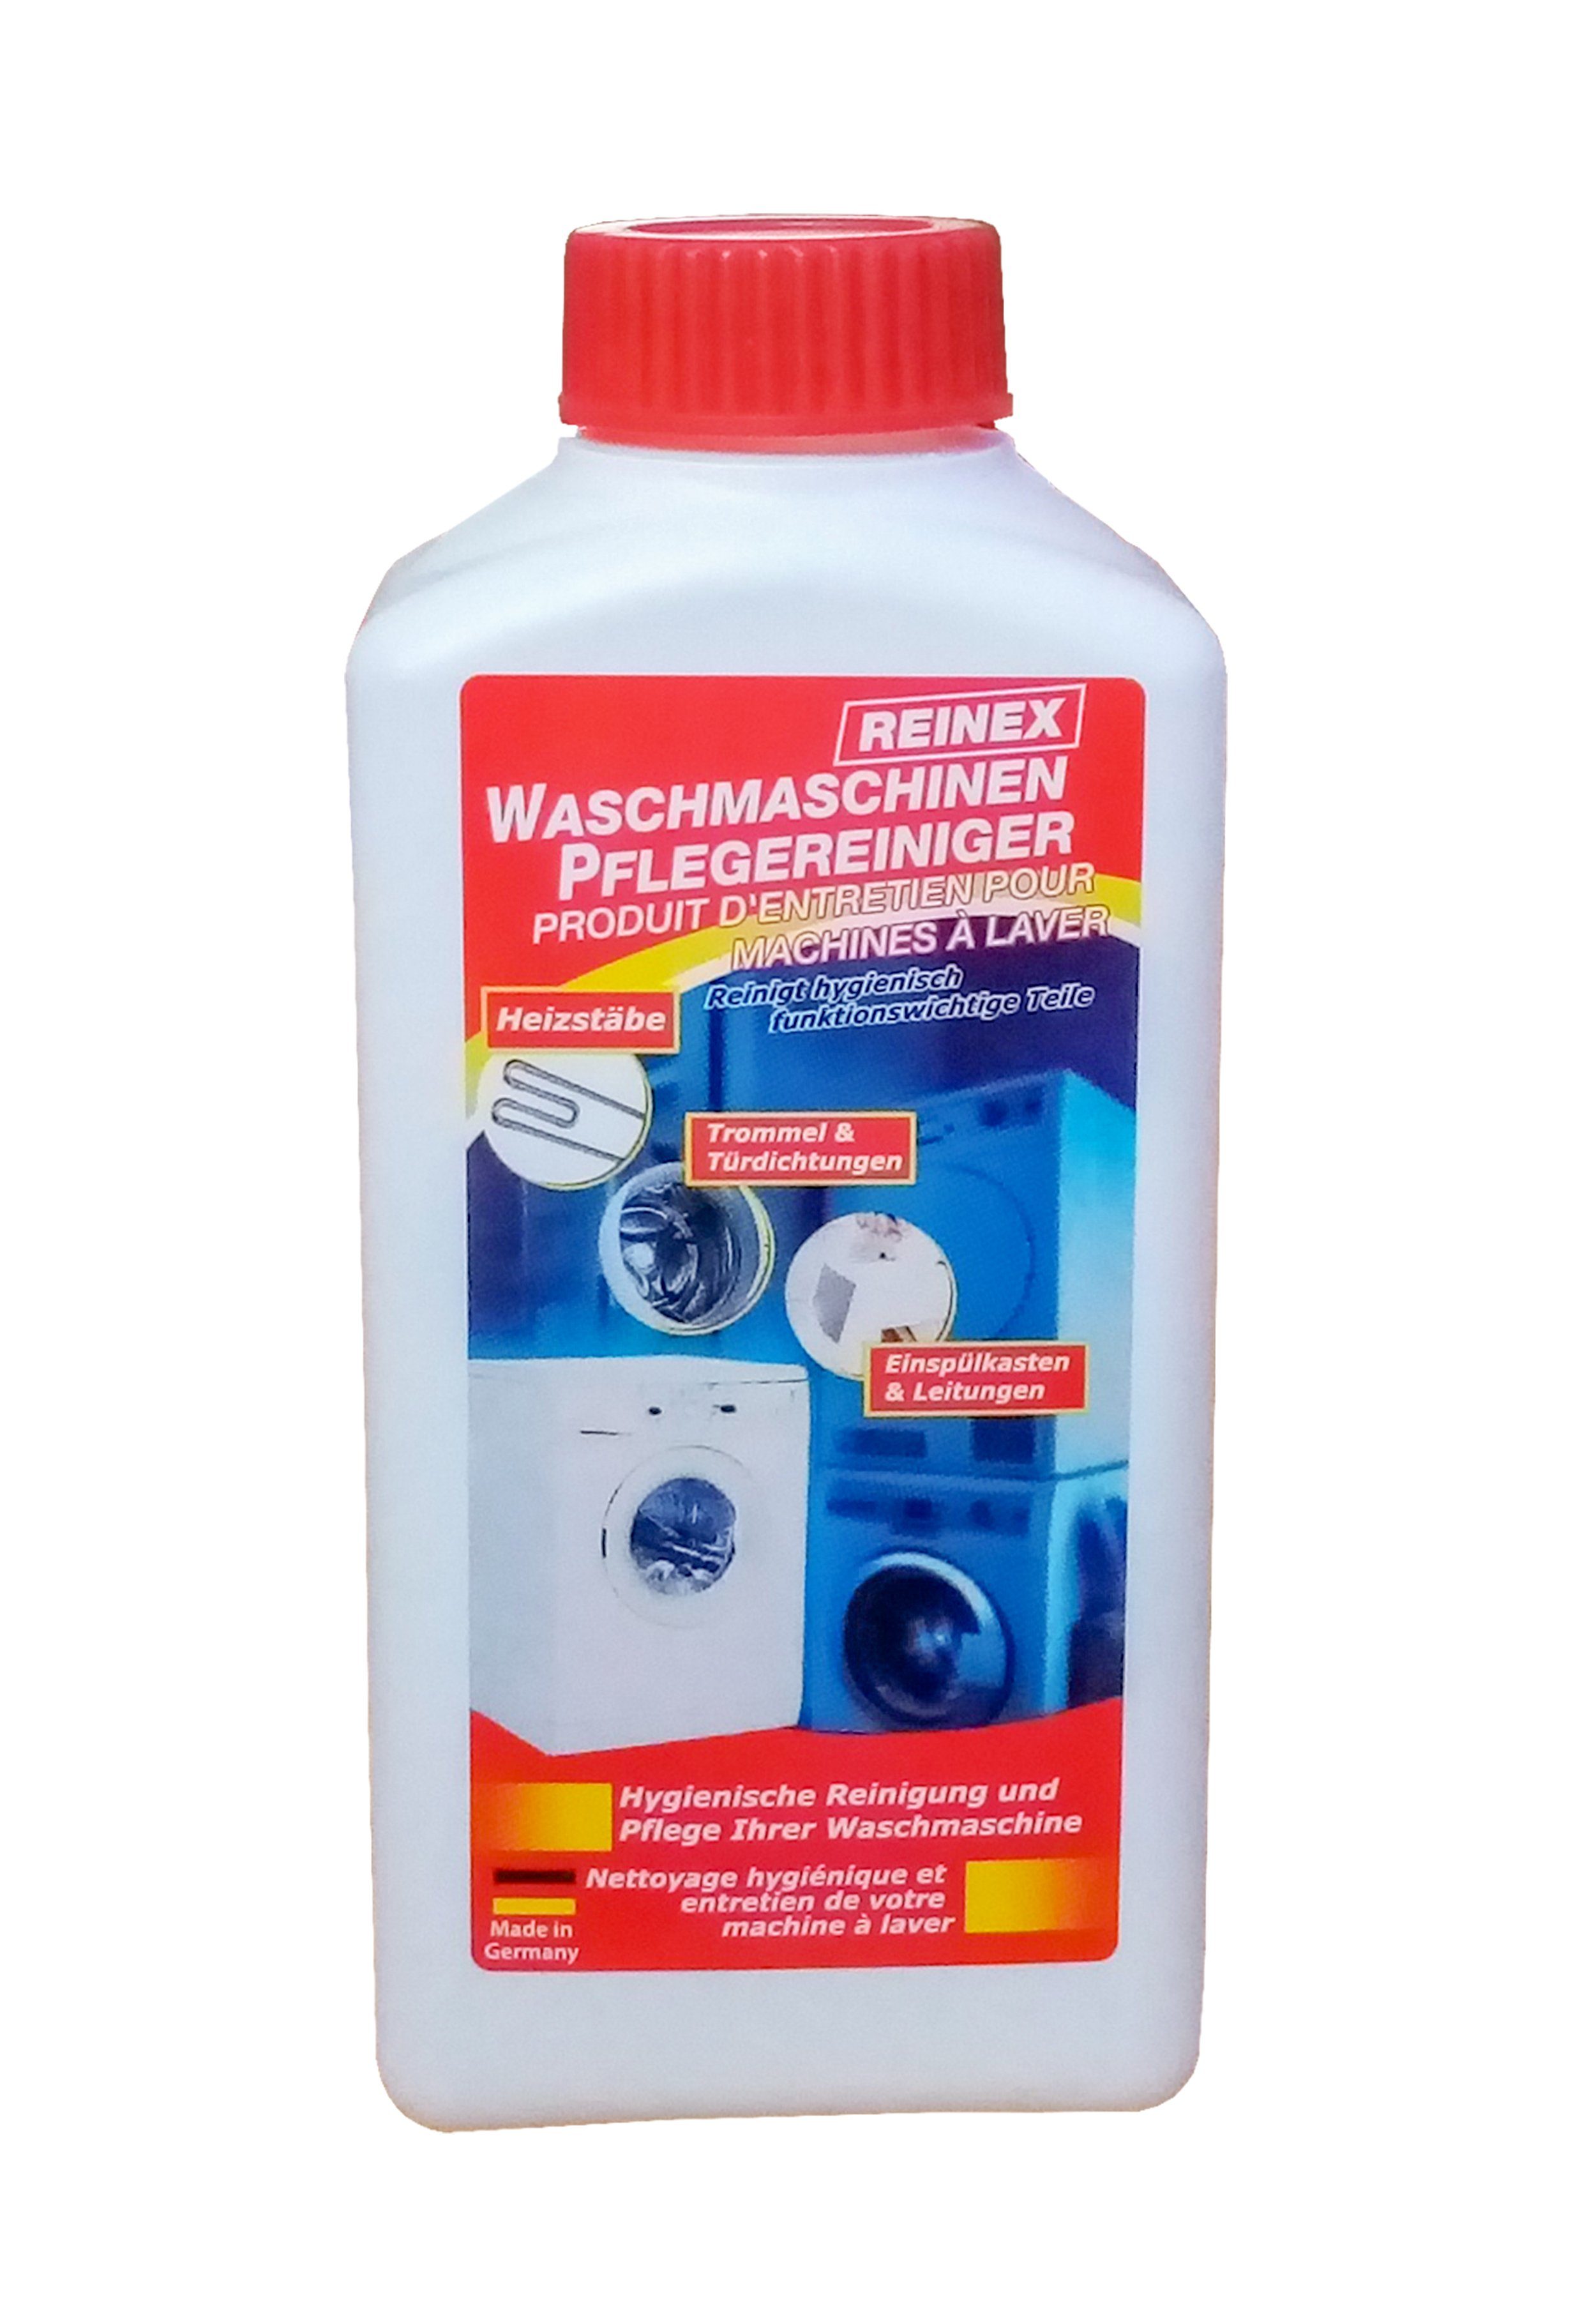 Reinex WASCHMASCHINEN PFLEGEREINIGER 250ml Waschmaschinenpflege 73 Waschmaschinenpflege (Waschmaschine Waschmaschinen Hygiene Reinigung Pflege Reiniger)